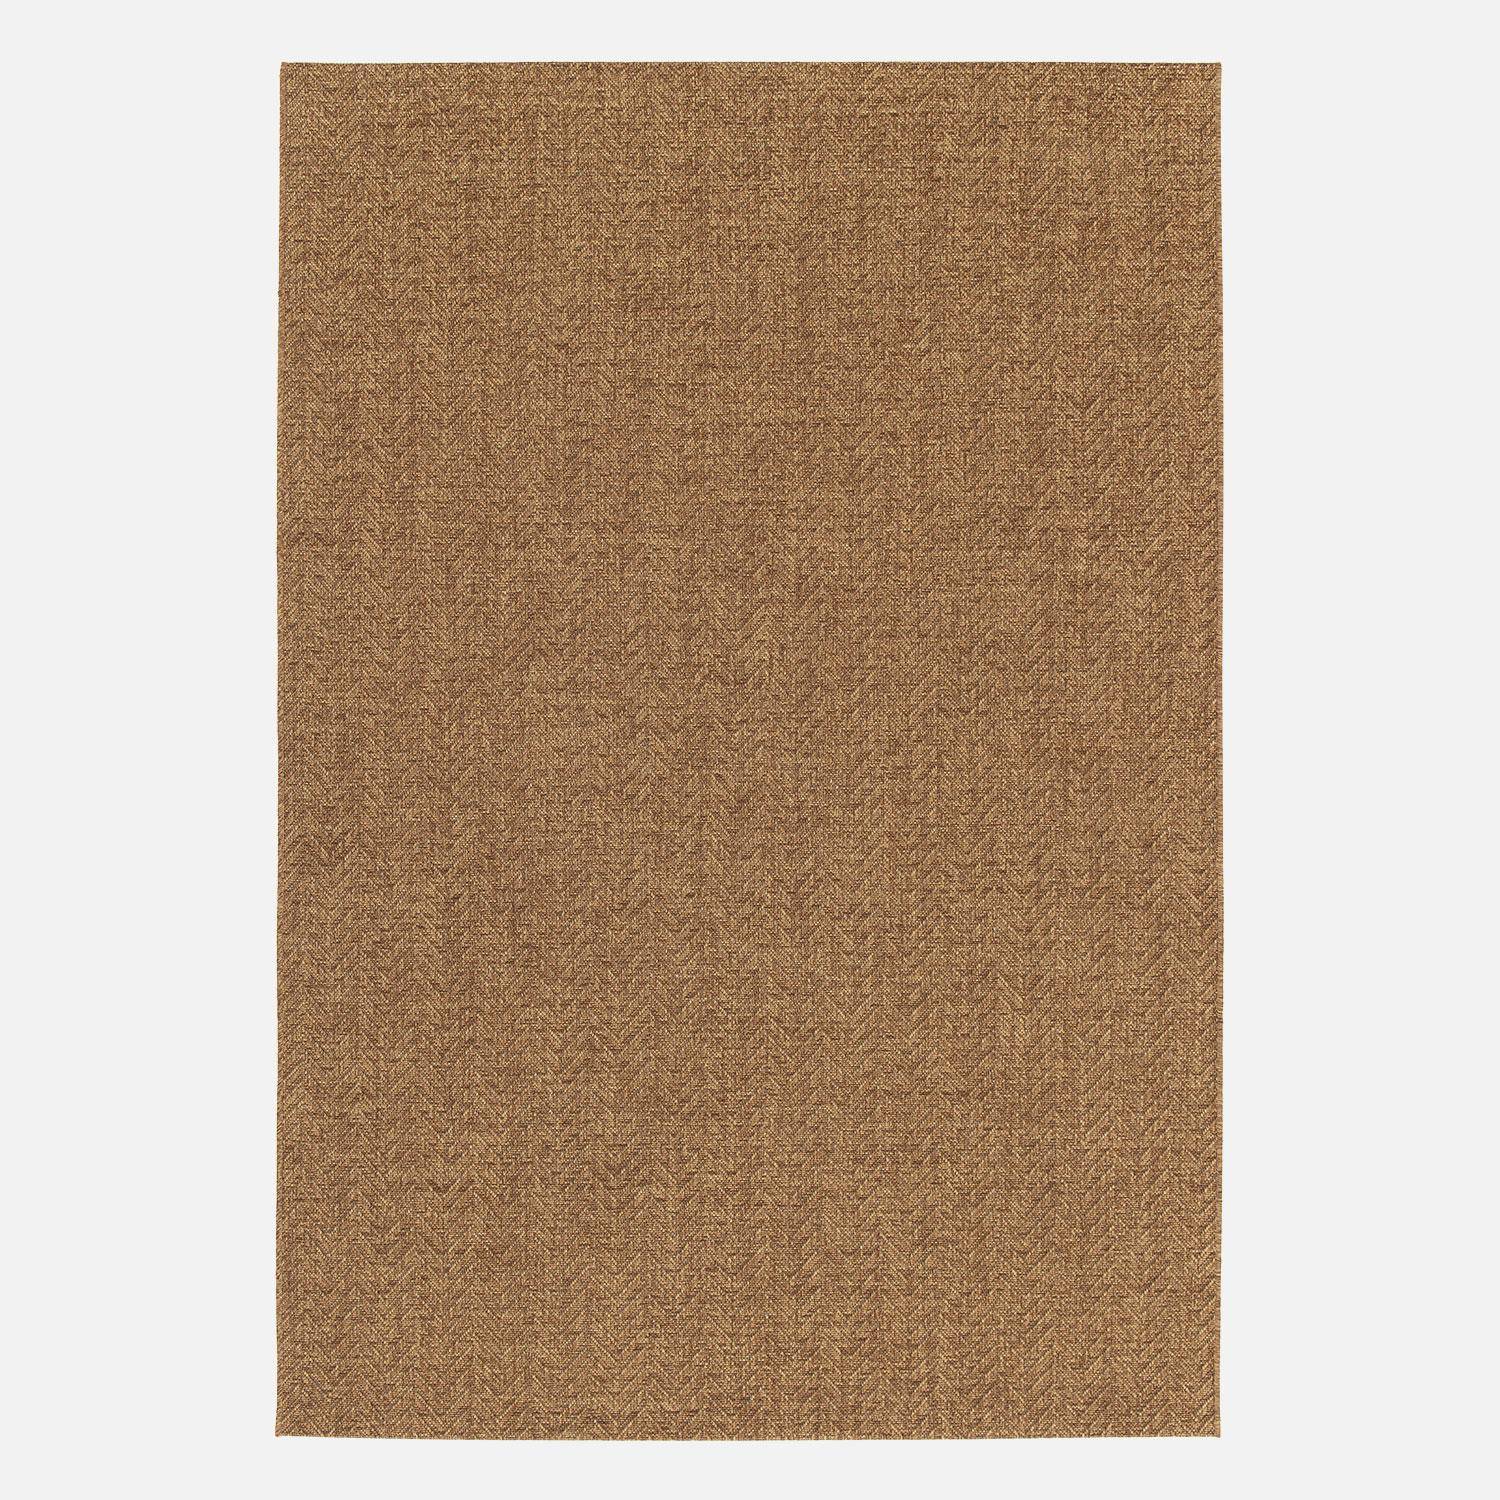 Jute-effect indoor/outdoor carpet in caramel, Oliver, 160 x 230 cm,sweeek,Photo3